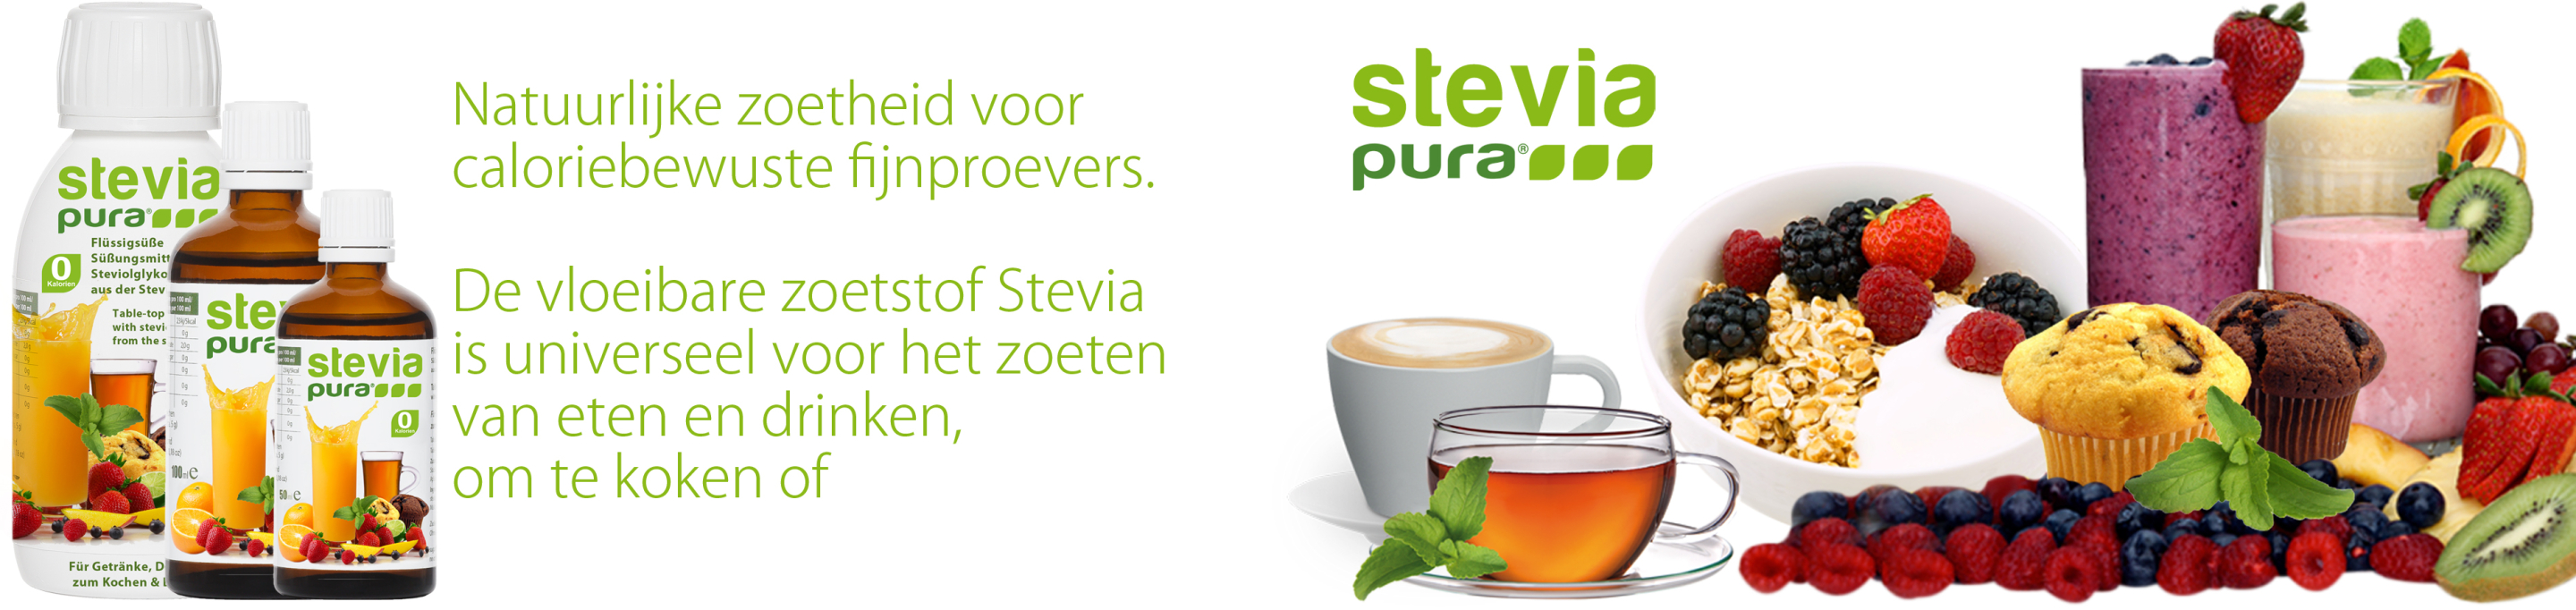 Stevia vloeibare zoetstof kopen stevia vloeibaar zoetstof...